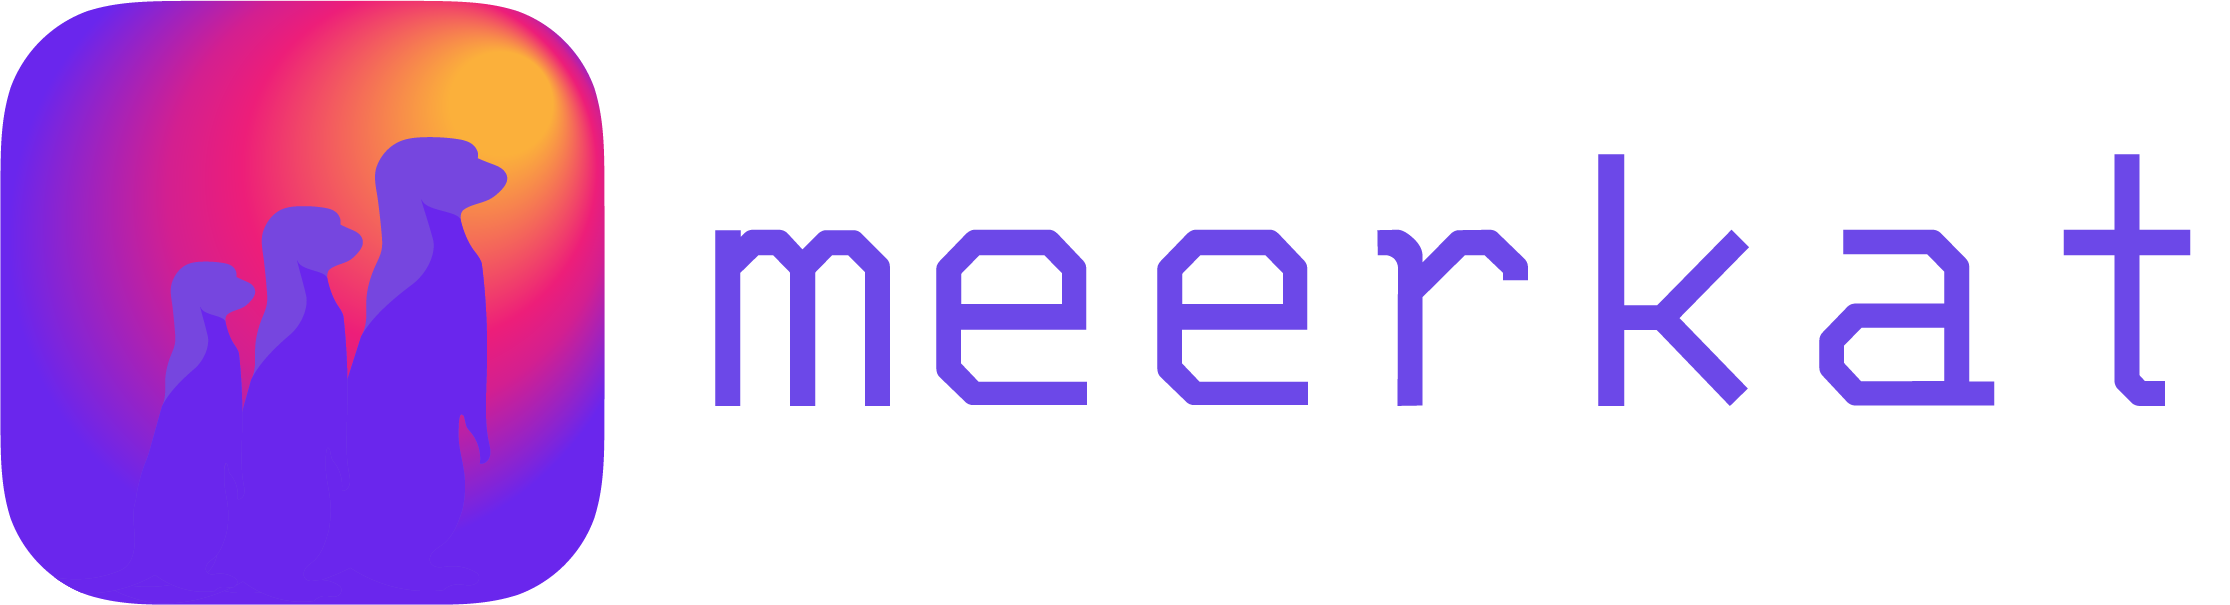 Meerkat logo